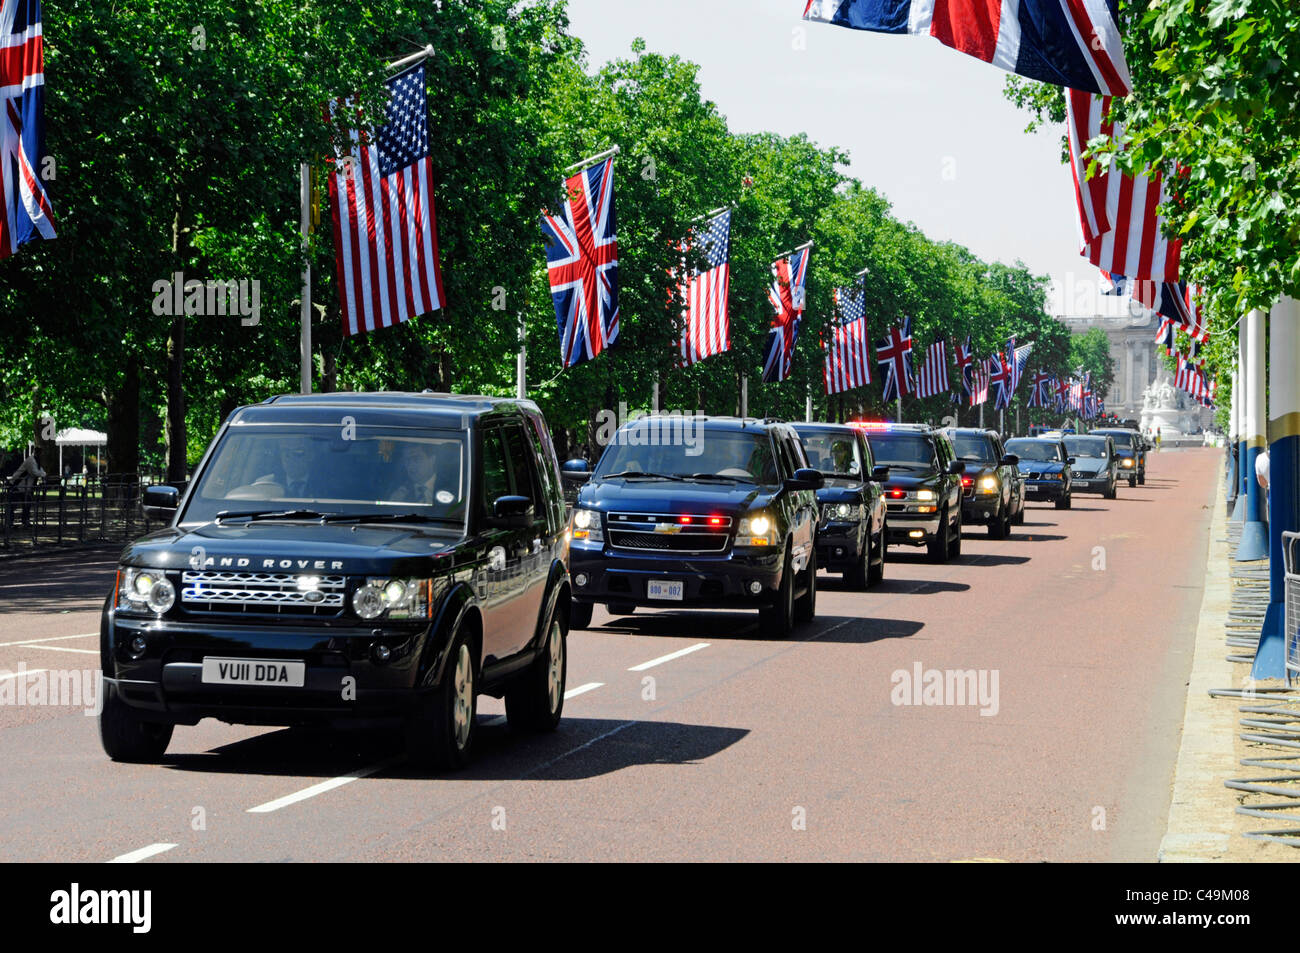 Motocicletta presidenziale delle guardie di sicurezza del Regno Unito e degli Stati Uniti nel Mall durante la visita dello stato del presidente degli Stati Uniti Obama Union Jack flag Bandiere americane Londra Inghilterra Regno Unito Foto Stock